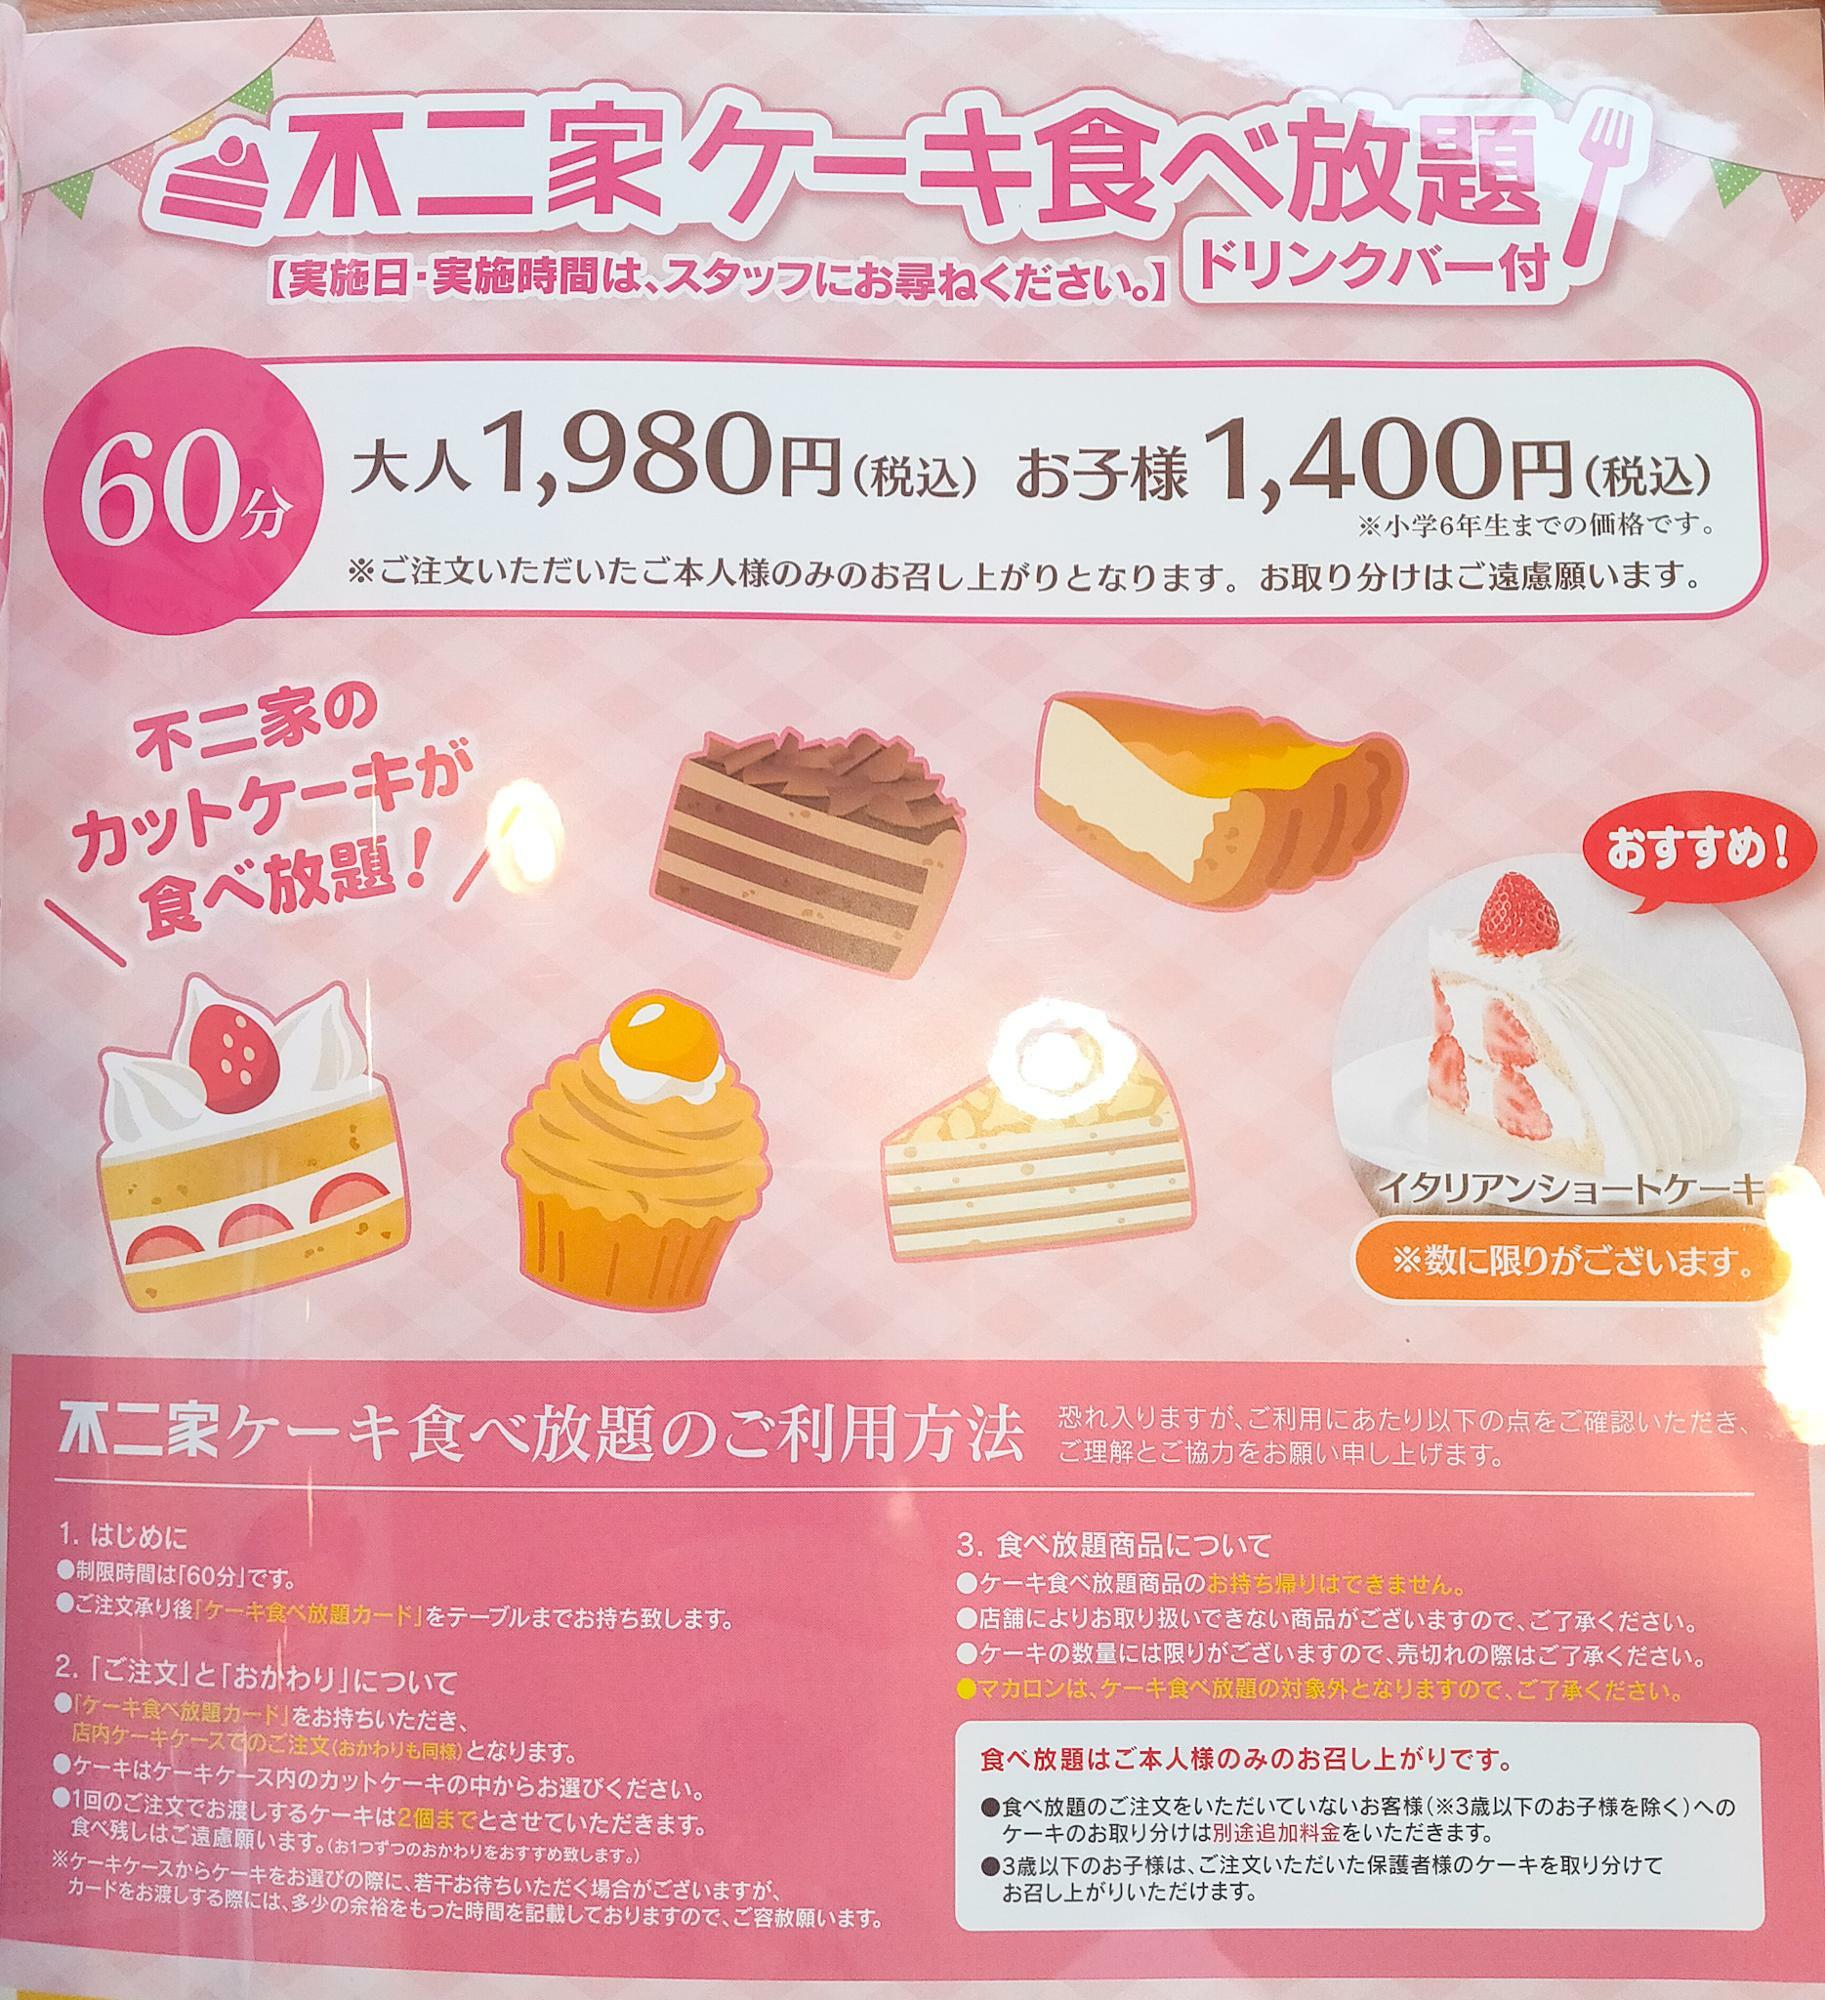 不二家のケーキ食べ放題は大人1980円(税込)で60分ケーキが食べ放題、ドリンクバー付。